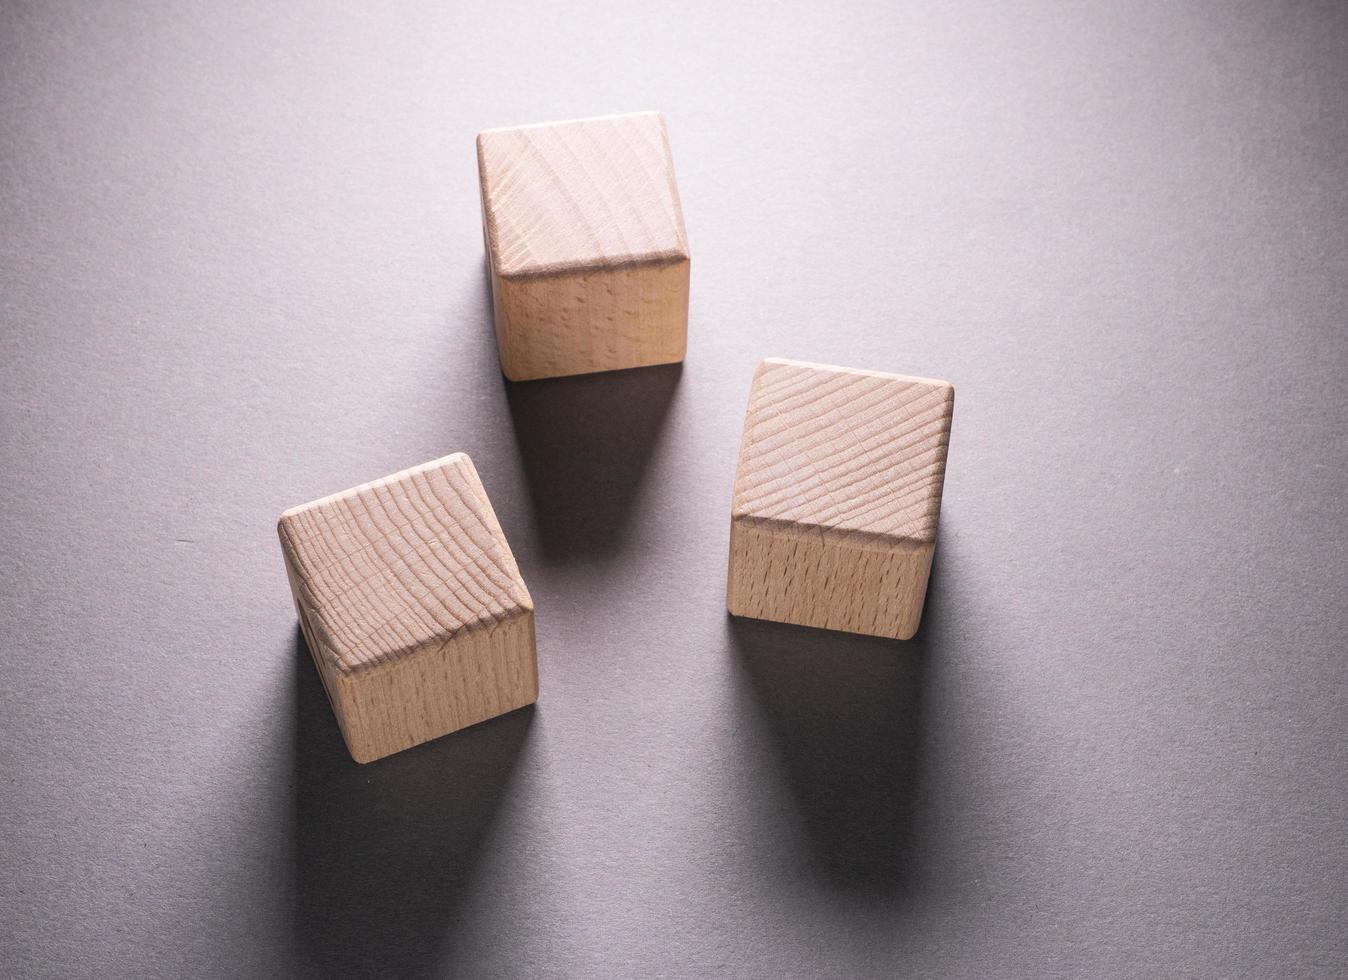 cubes de formes géométriques en bois photo